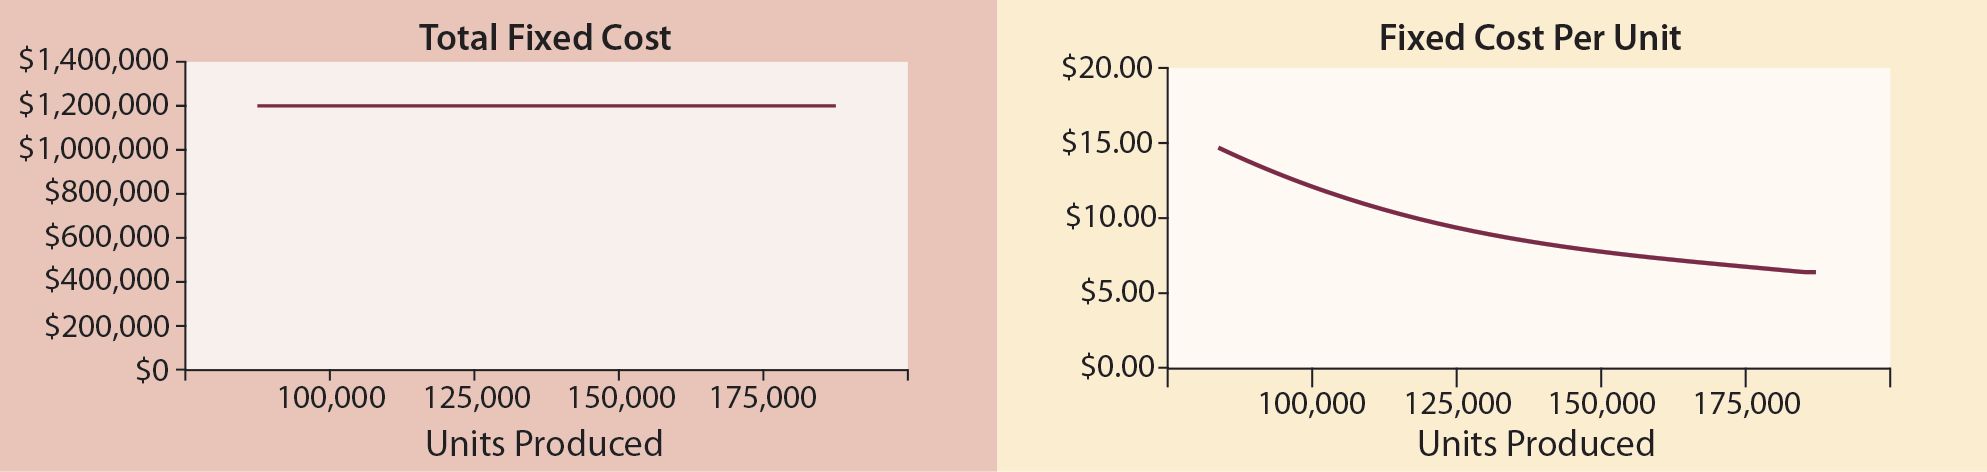 Cost Behavior - Fixed Cost Comparison